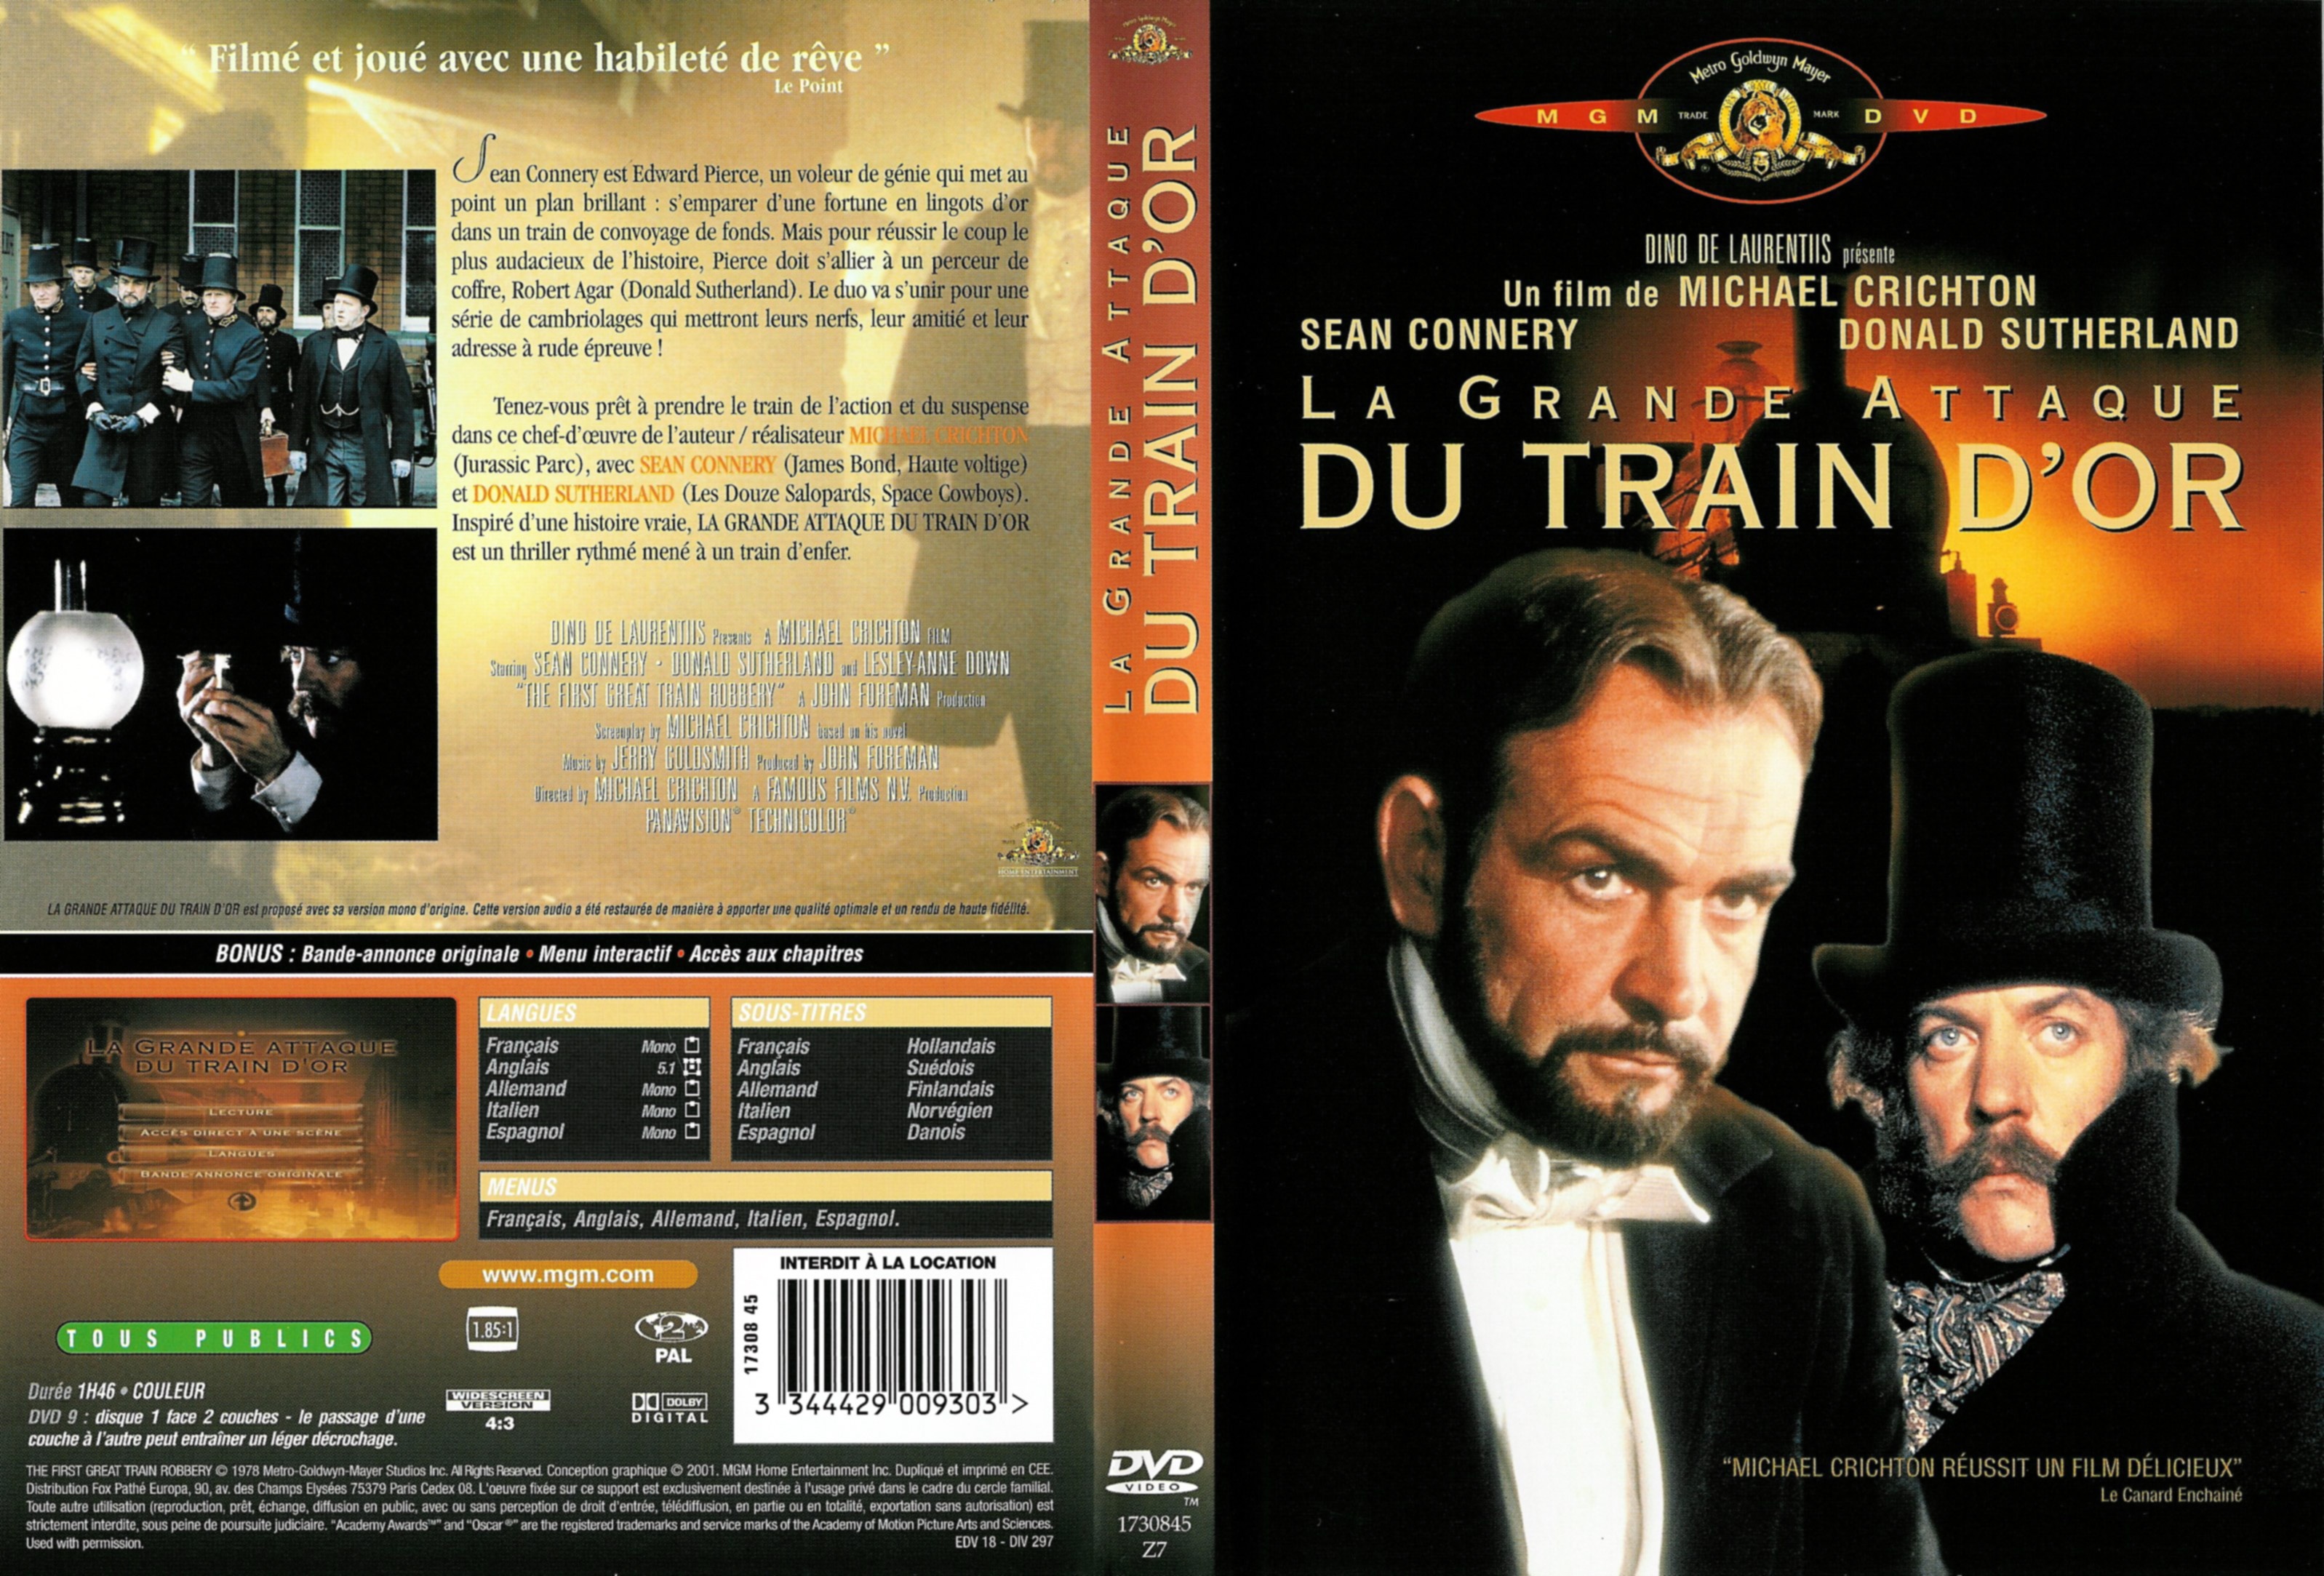 Jaquette DVD La grande attaque du train d